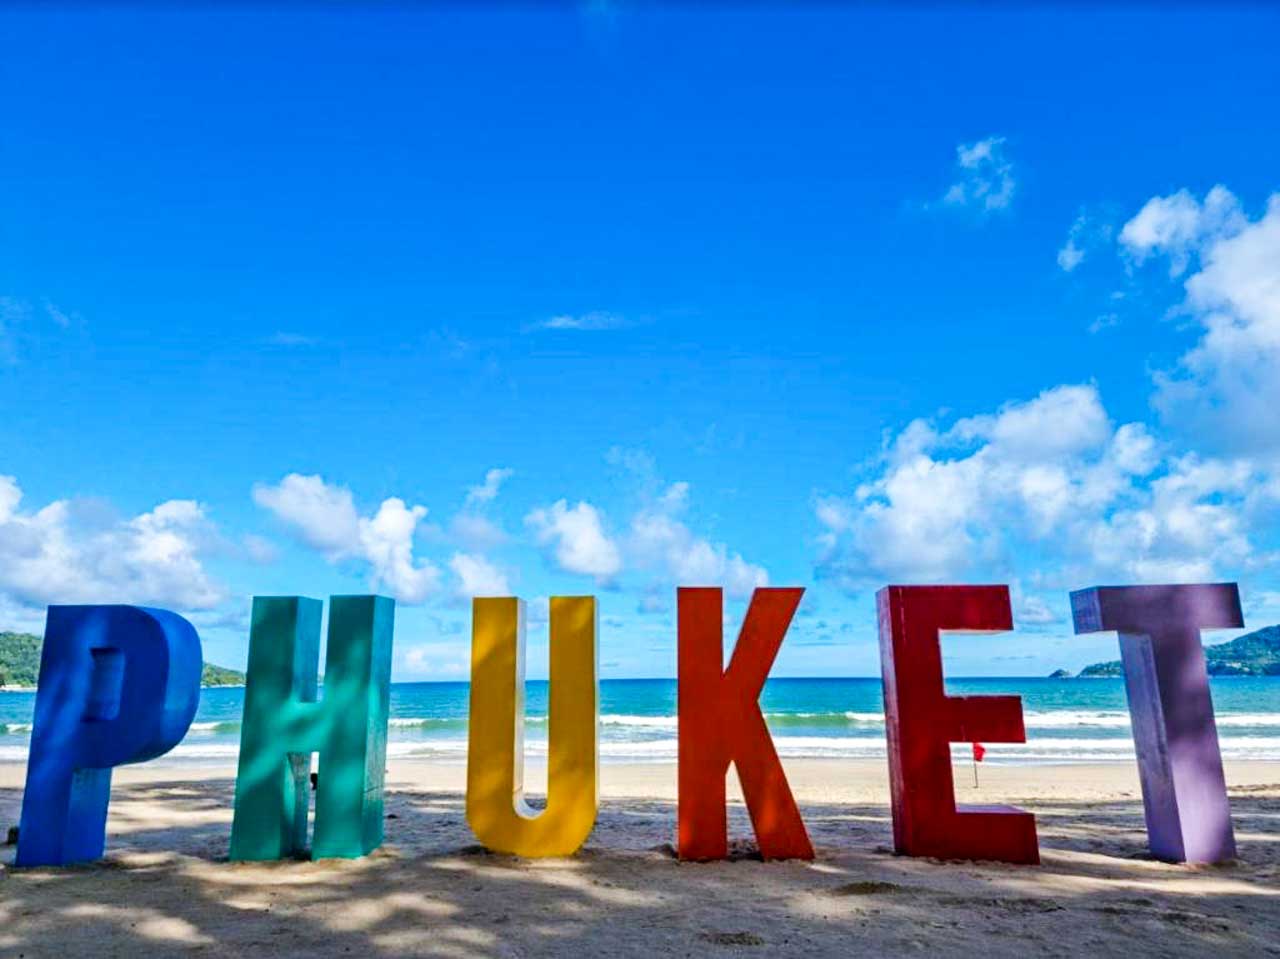 Placa de Phuket em Patong beach, Tailândia com dicas de onde ficar em Phuket 